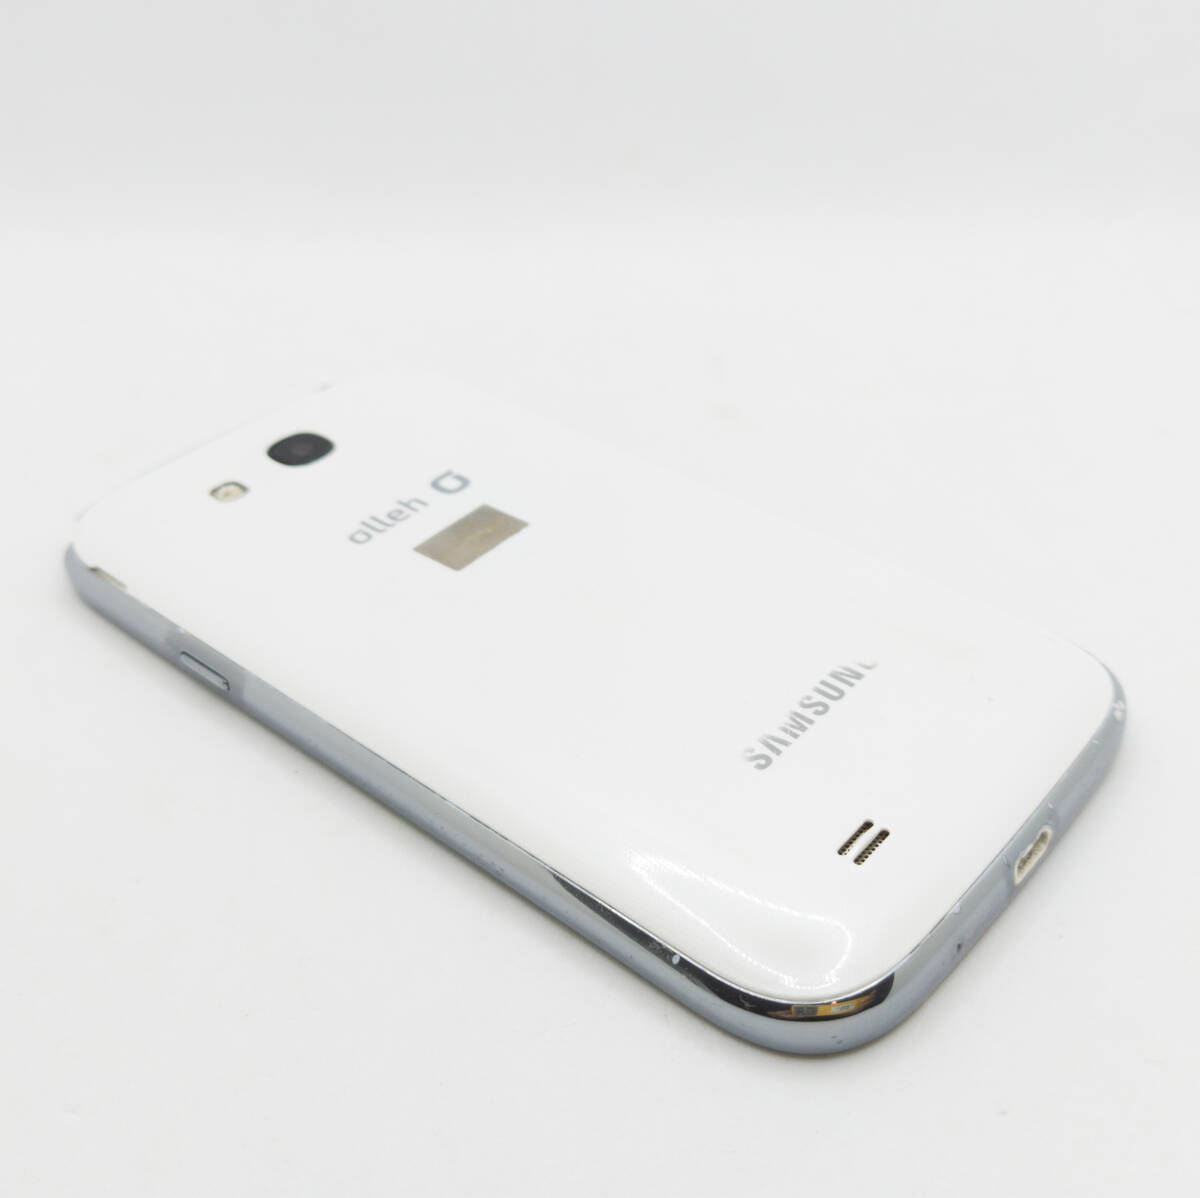 Samsung Galaxy Grand SHV-E270K サムスン ギャラクシー スマートフォン スマホ Android アンドロイド 携帯電話 本体 #ST-02935の画像3